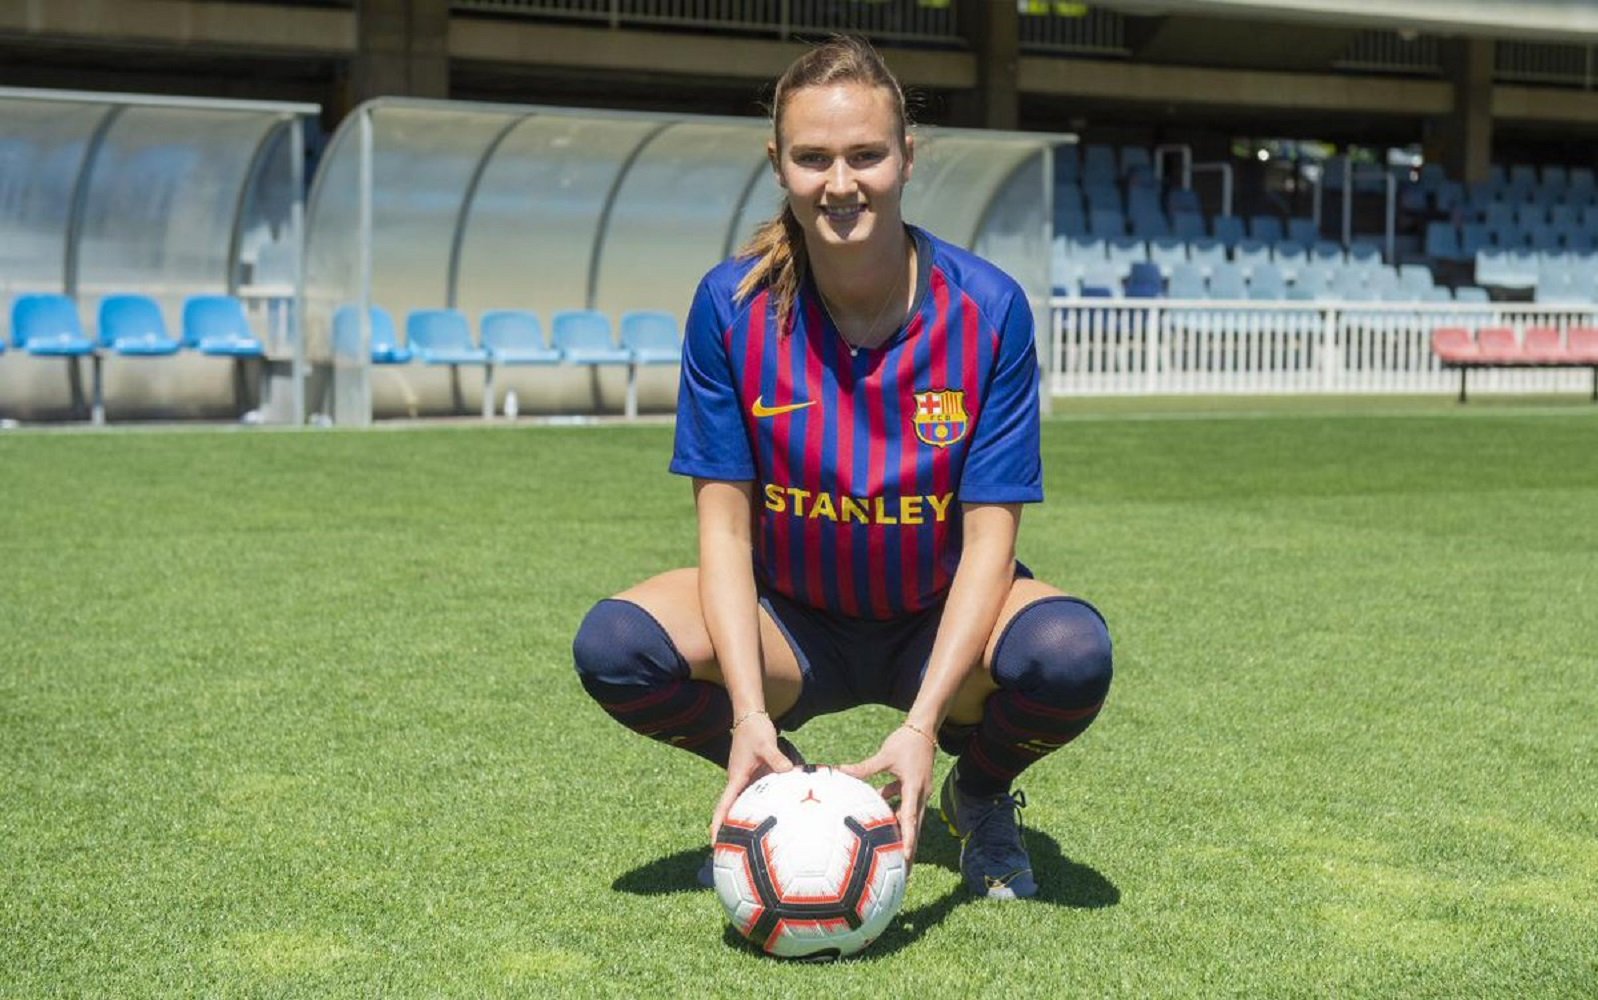 El Barça anuncia el fitxatge de l'estrella noruega Caroline Hansen